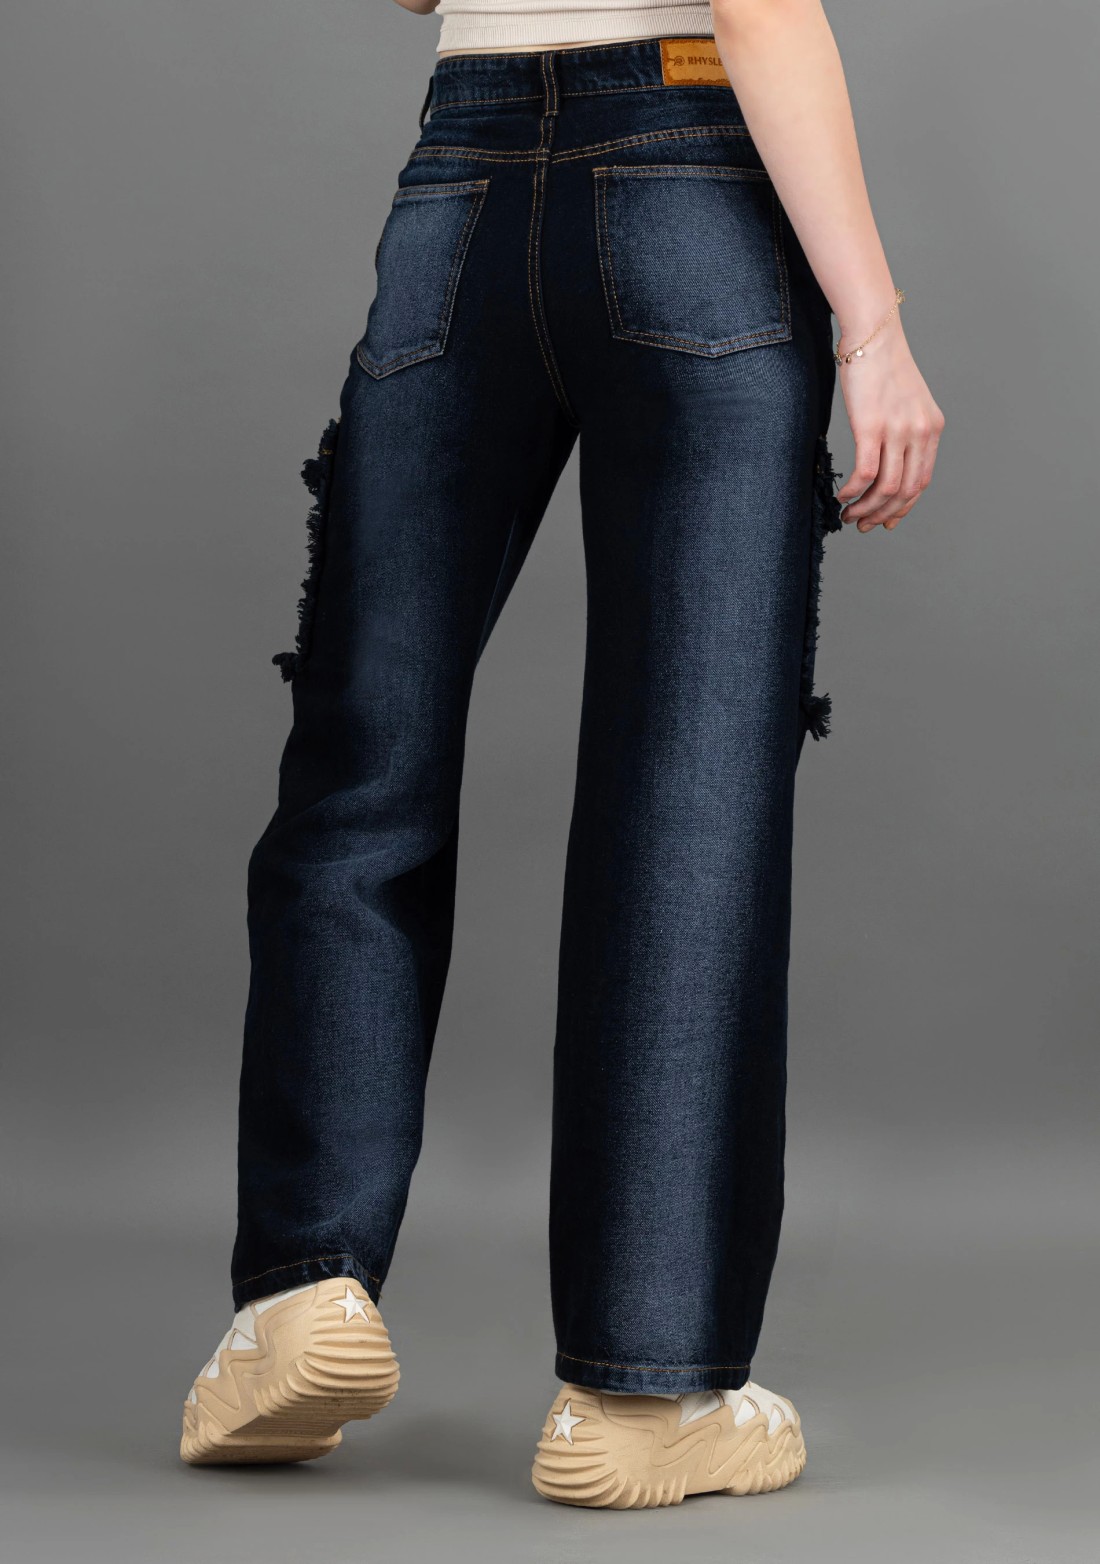 Bluish Grey Wide Leg Rhysley Women's Fashion Jeans